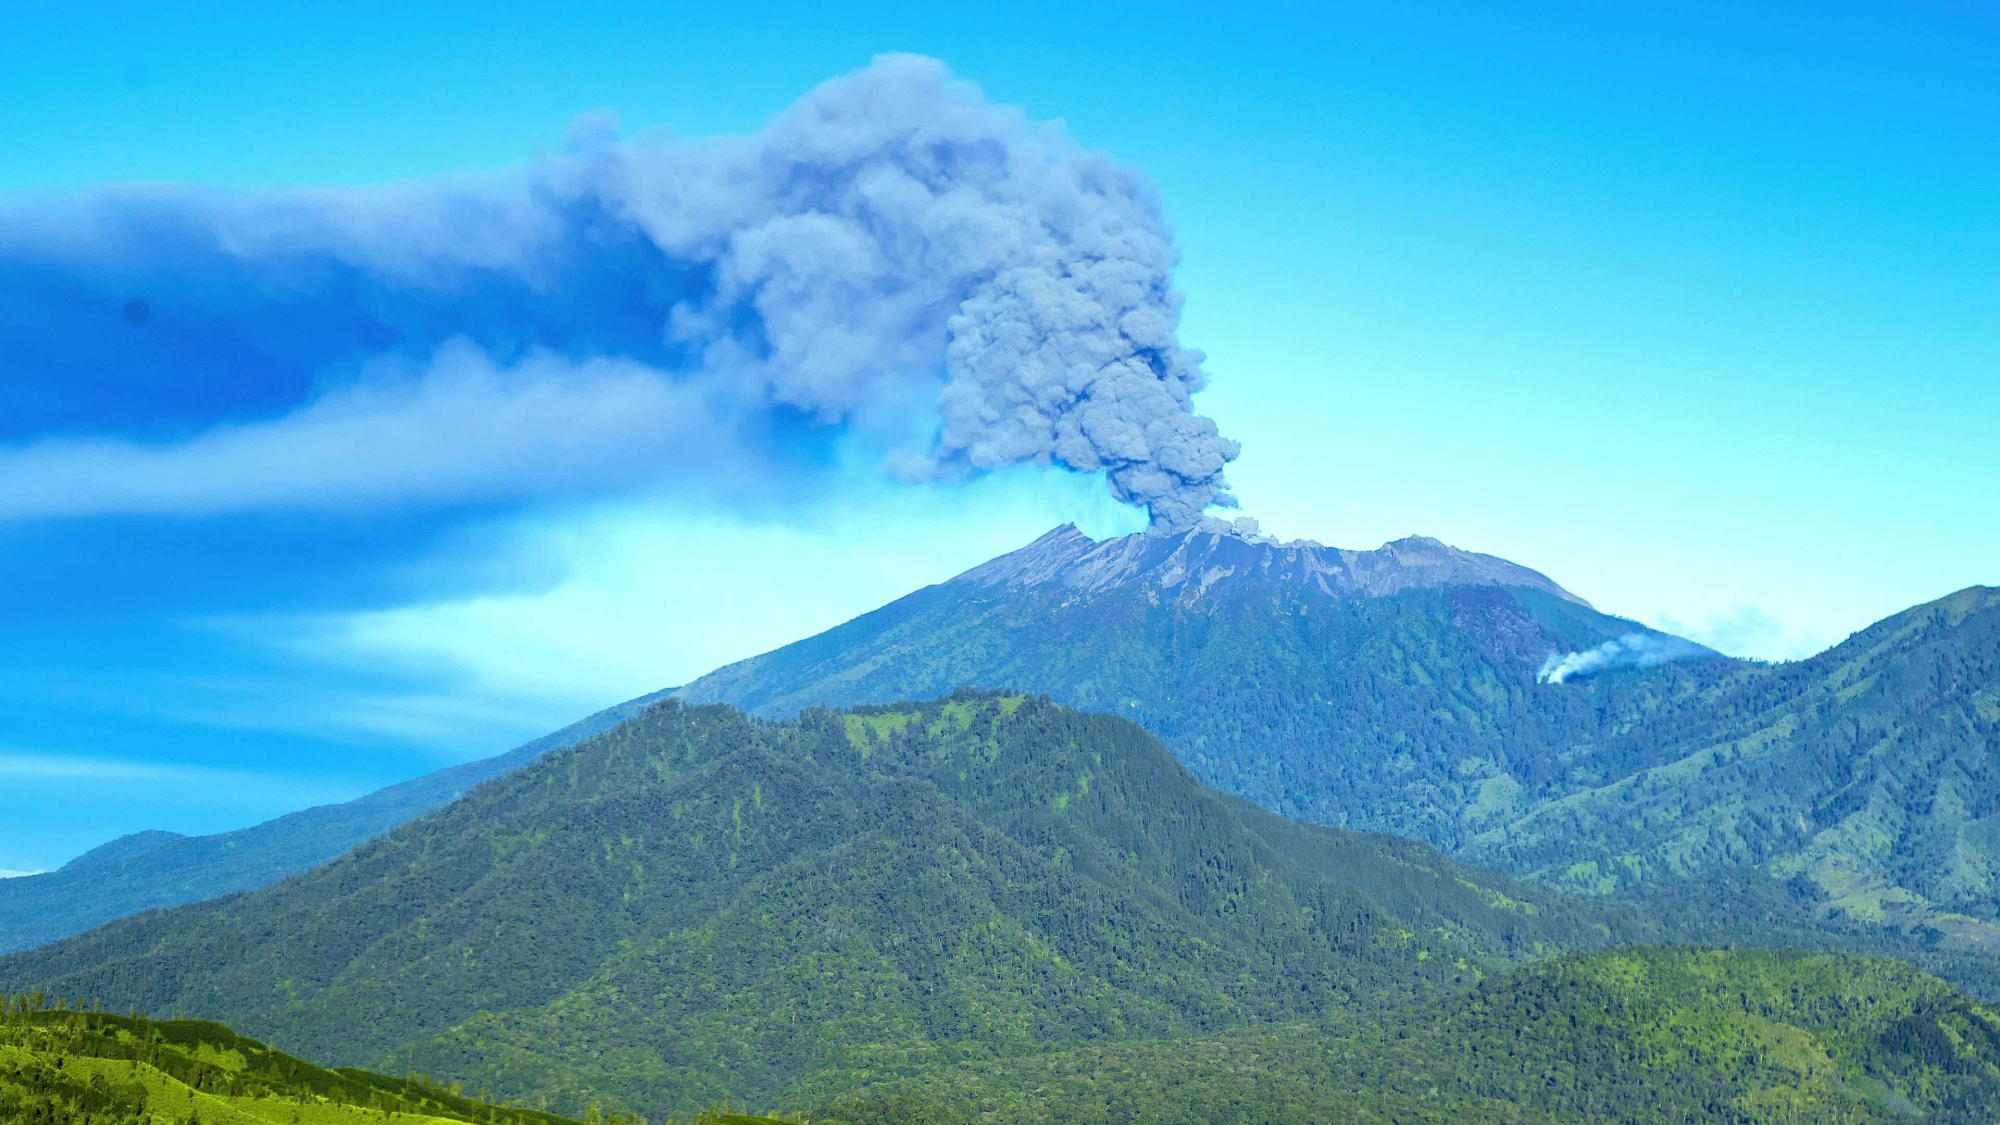 地球最大的超级火山,黄石公园火山,一旦喷发会造成怎样的灾难?